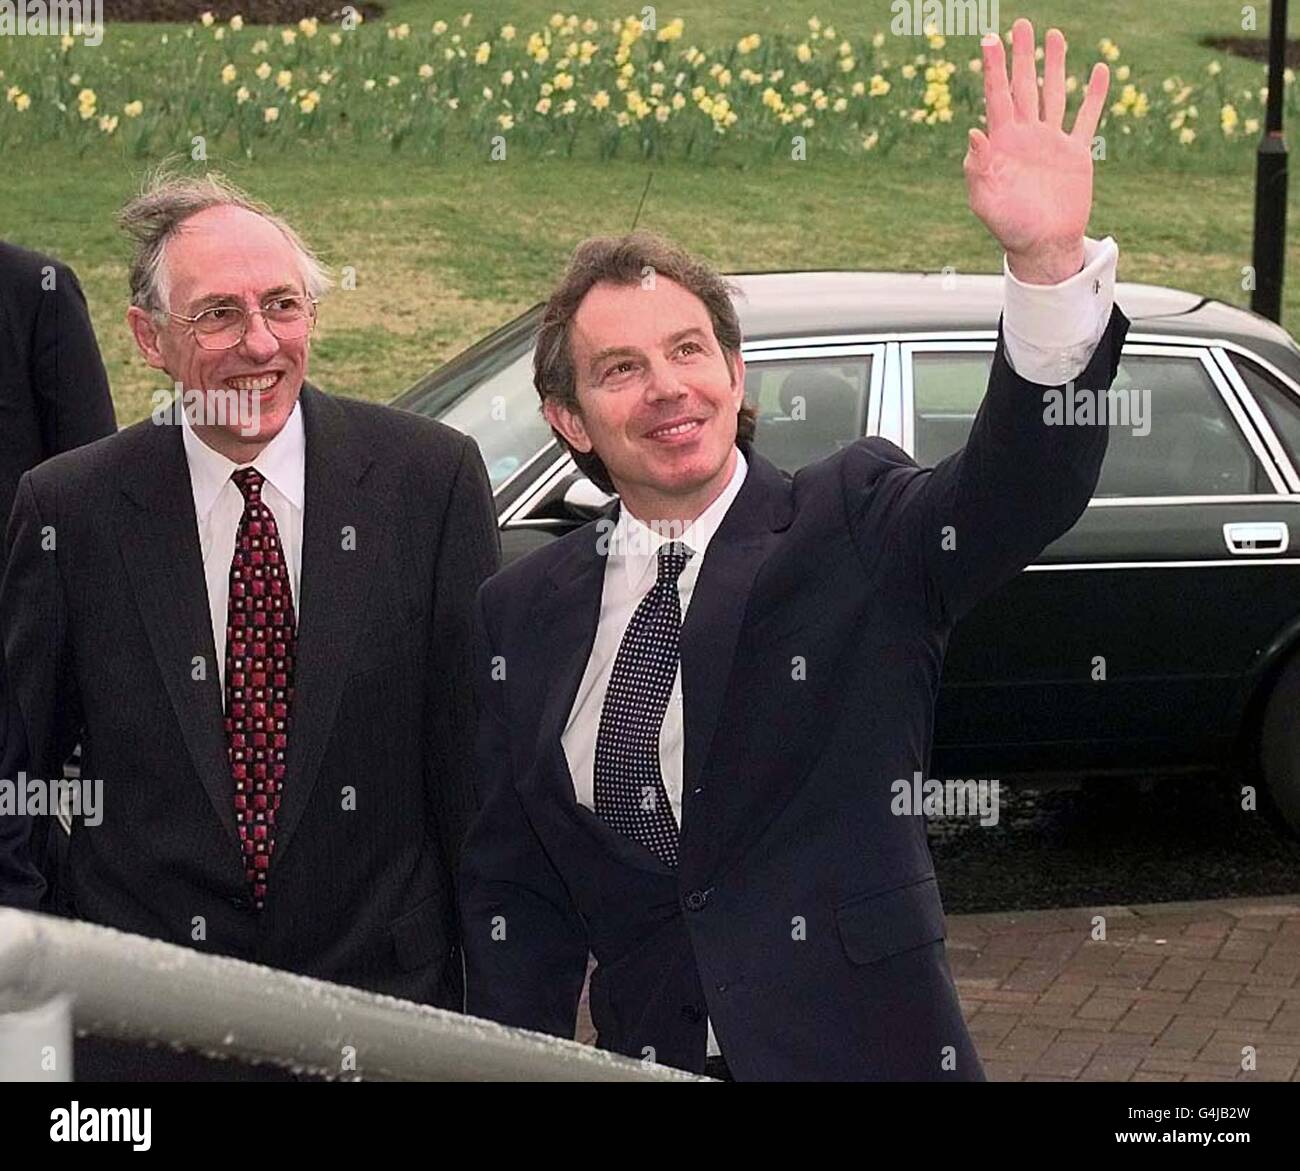 El primer ministro Tony Blair (derecha) y el Secretario escocés Donald Dewar agitan al personal de la oficina de Adiós después de su visita a la Agencia de Desarrollo de Lanarkshire. Foto de stock